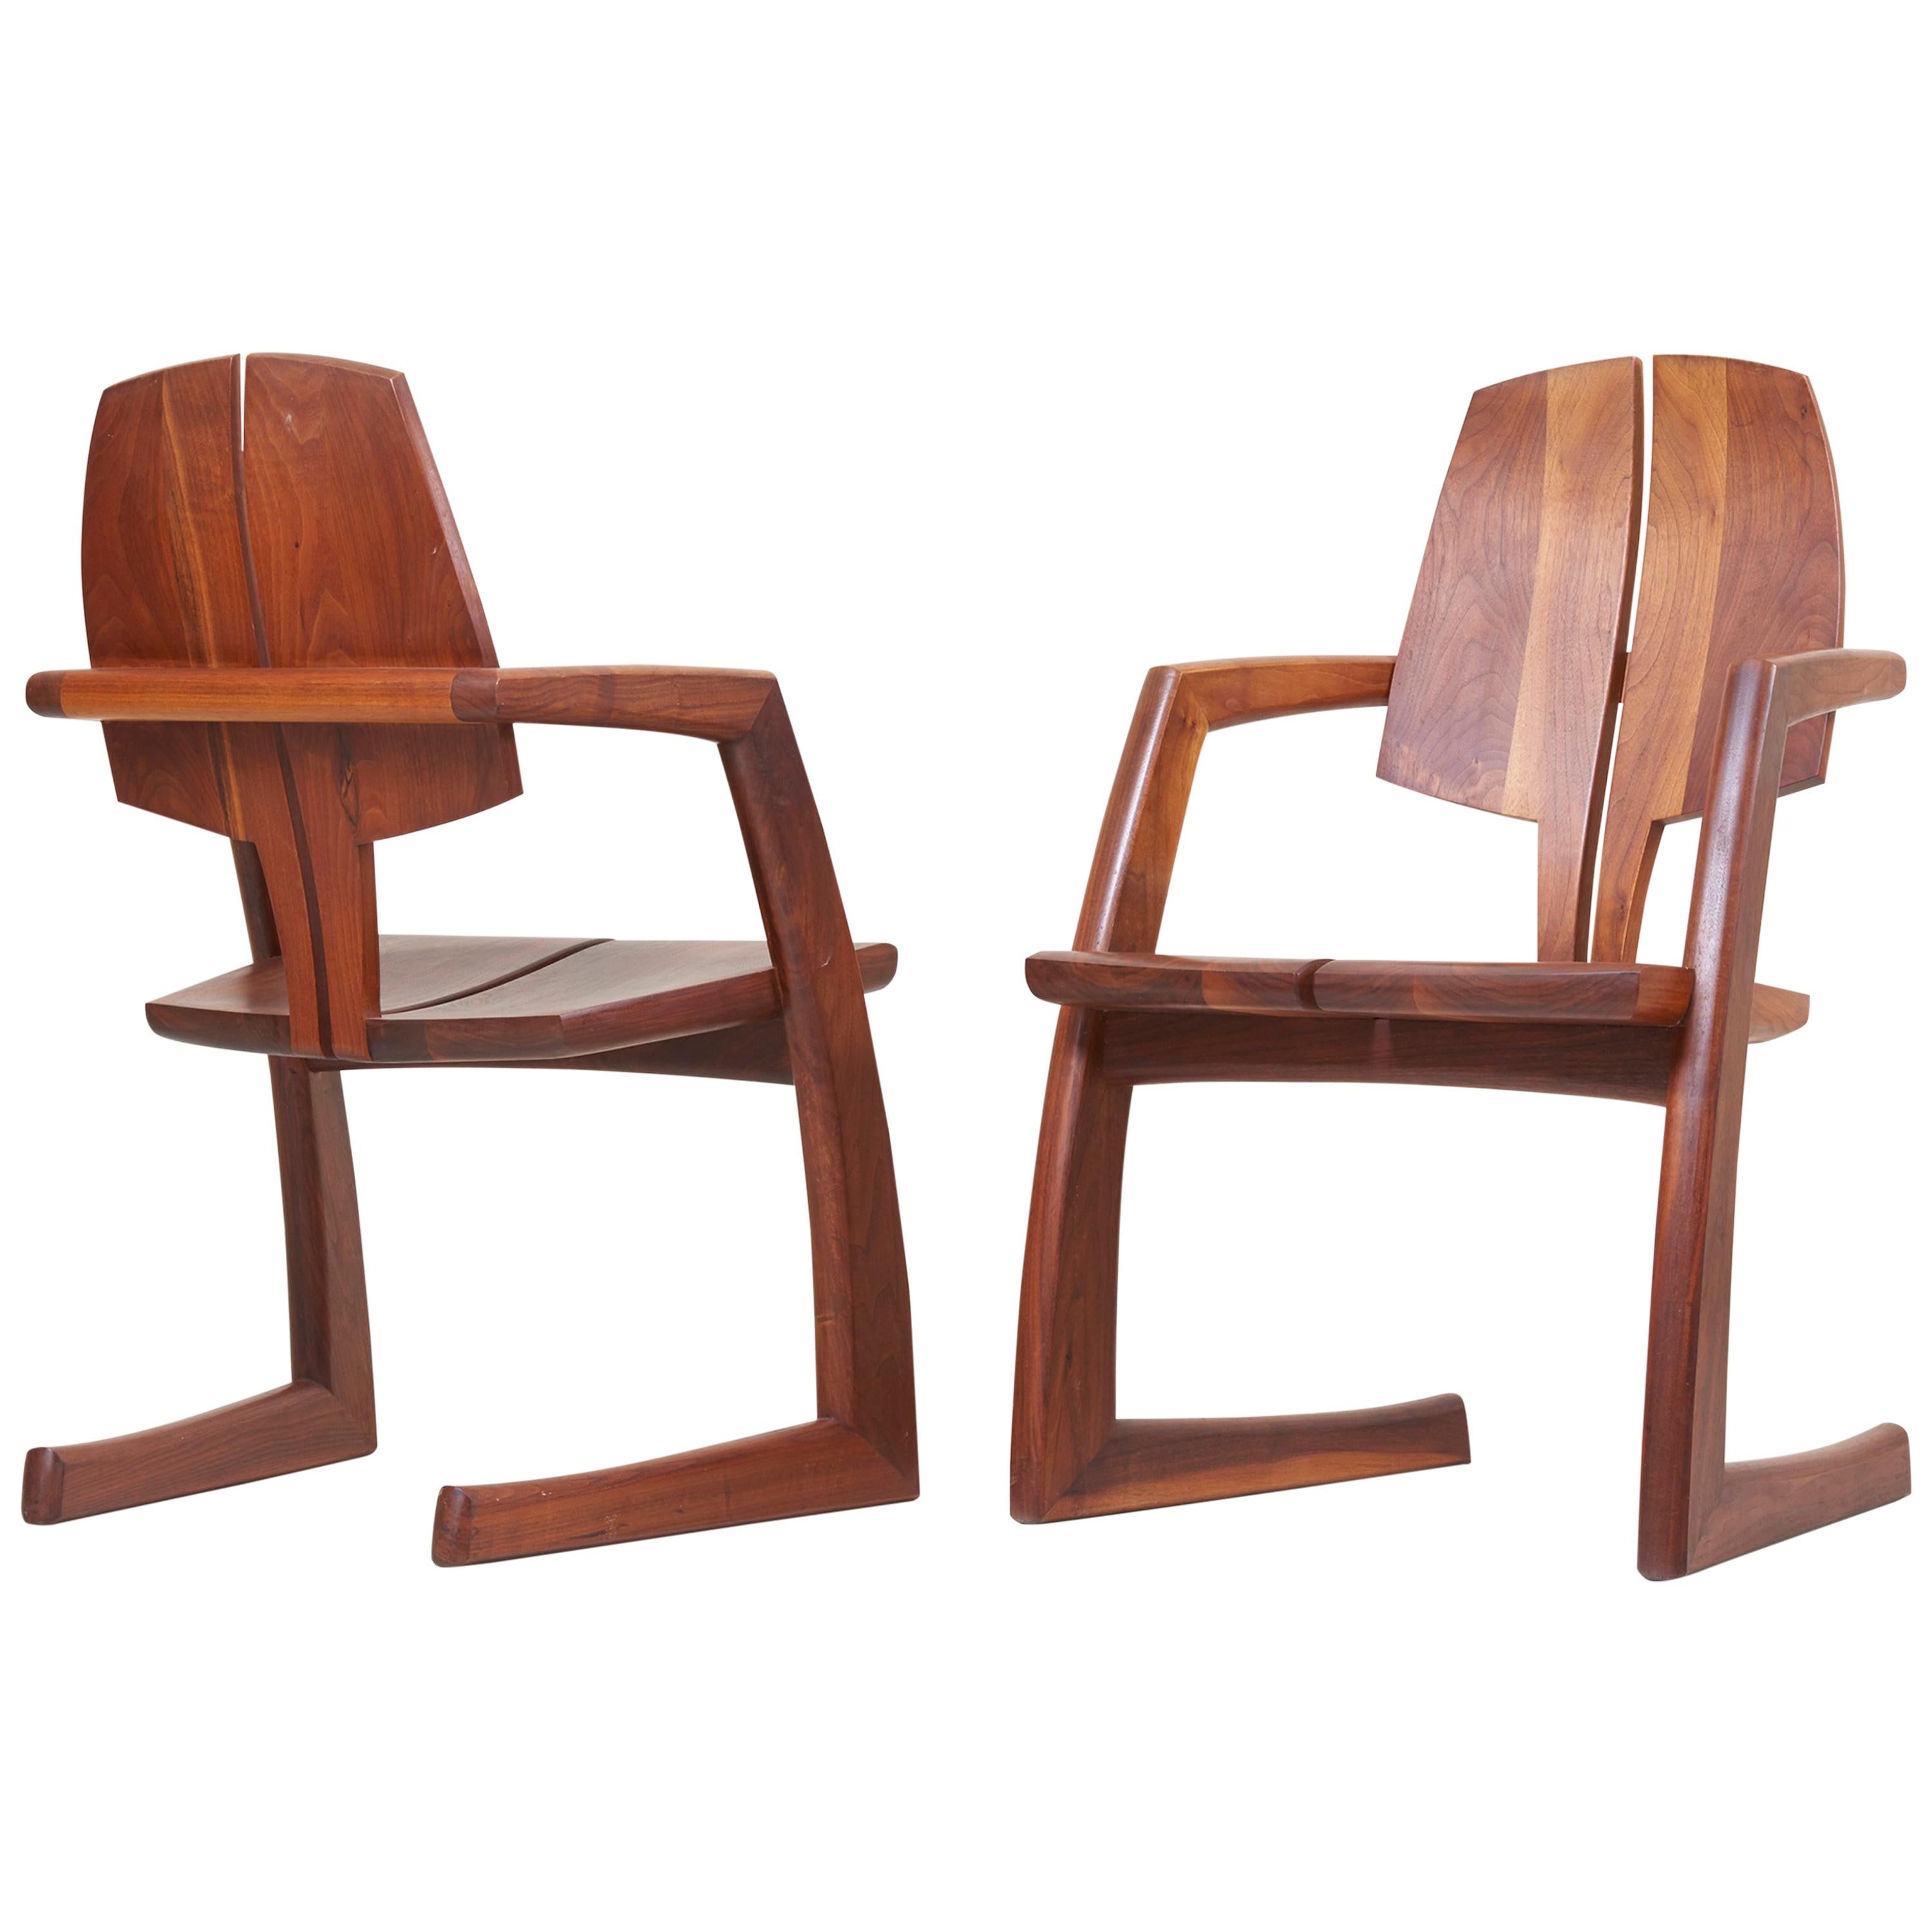 Pair of Wooden Studio Armchairs by H. Wayne Raab, US, 1970s